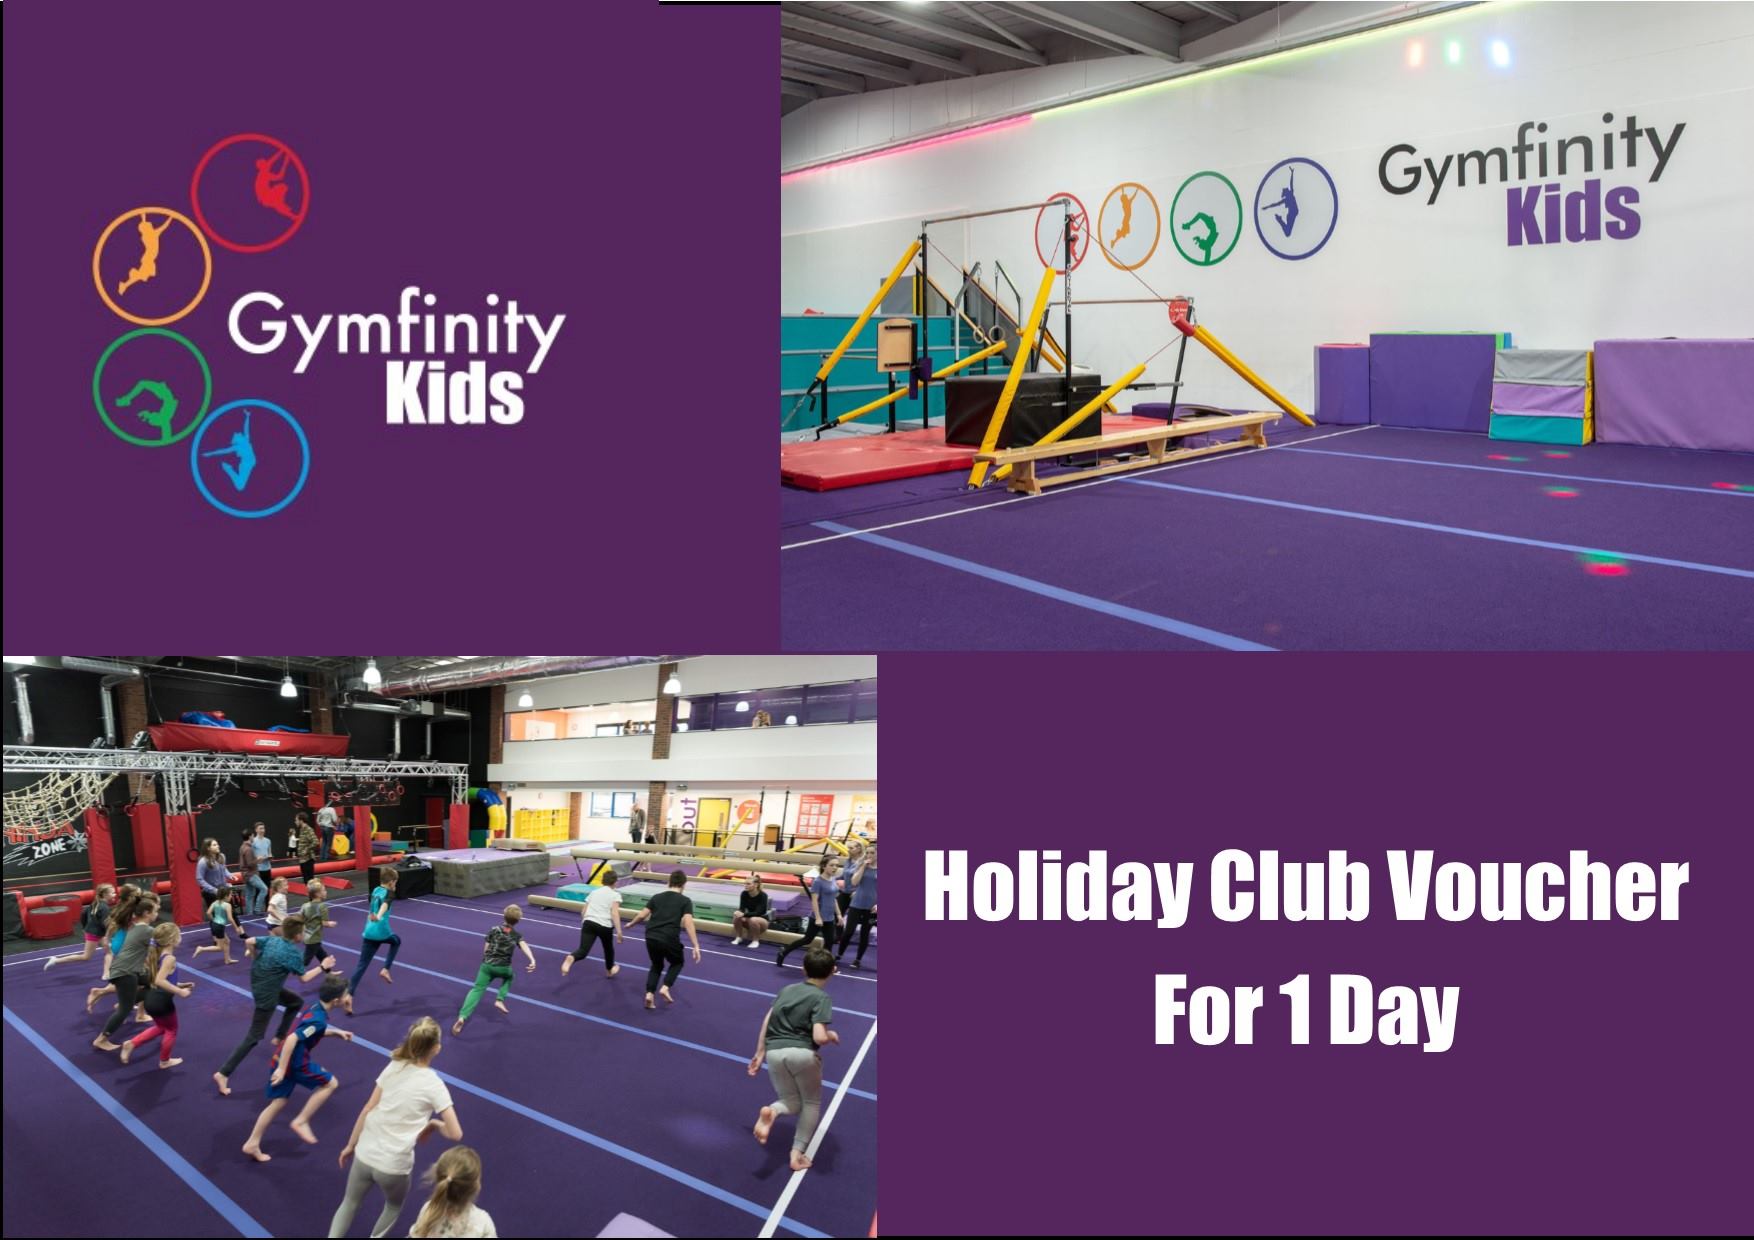 Gymfinity Kids Holiday Club Voucher